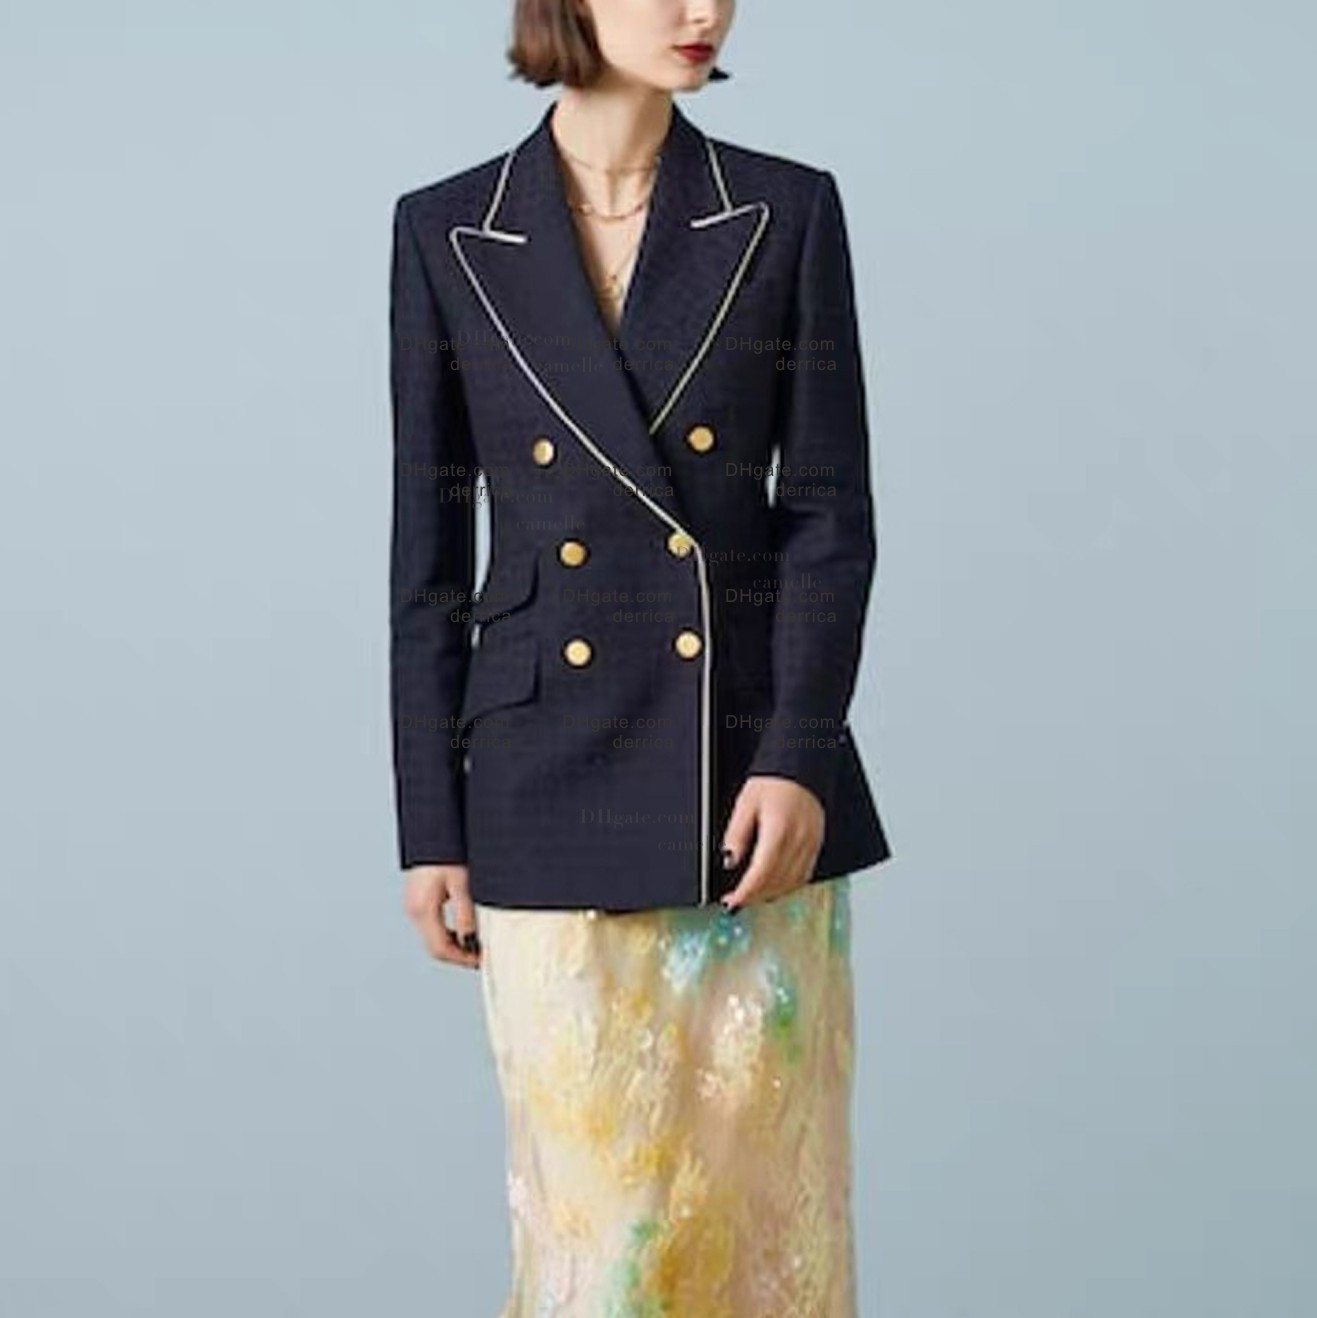 Frauen Designer Blazer Jacke Mantel Kleidung Buchstaben Akademischer Stil Frühling Herbst Neu veröffentlichtes Top